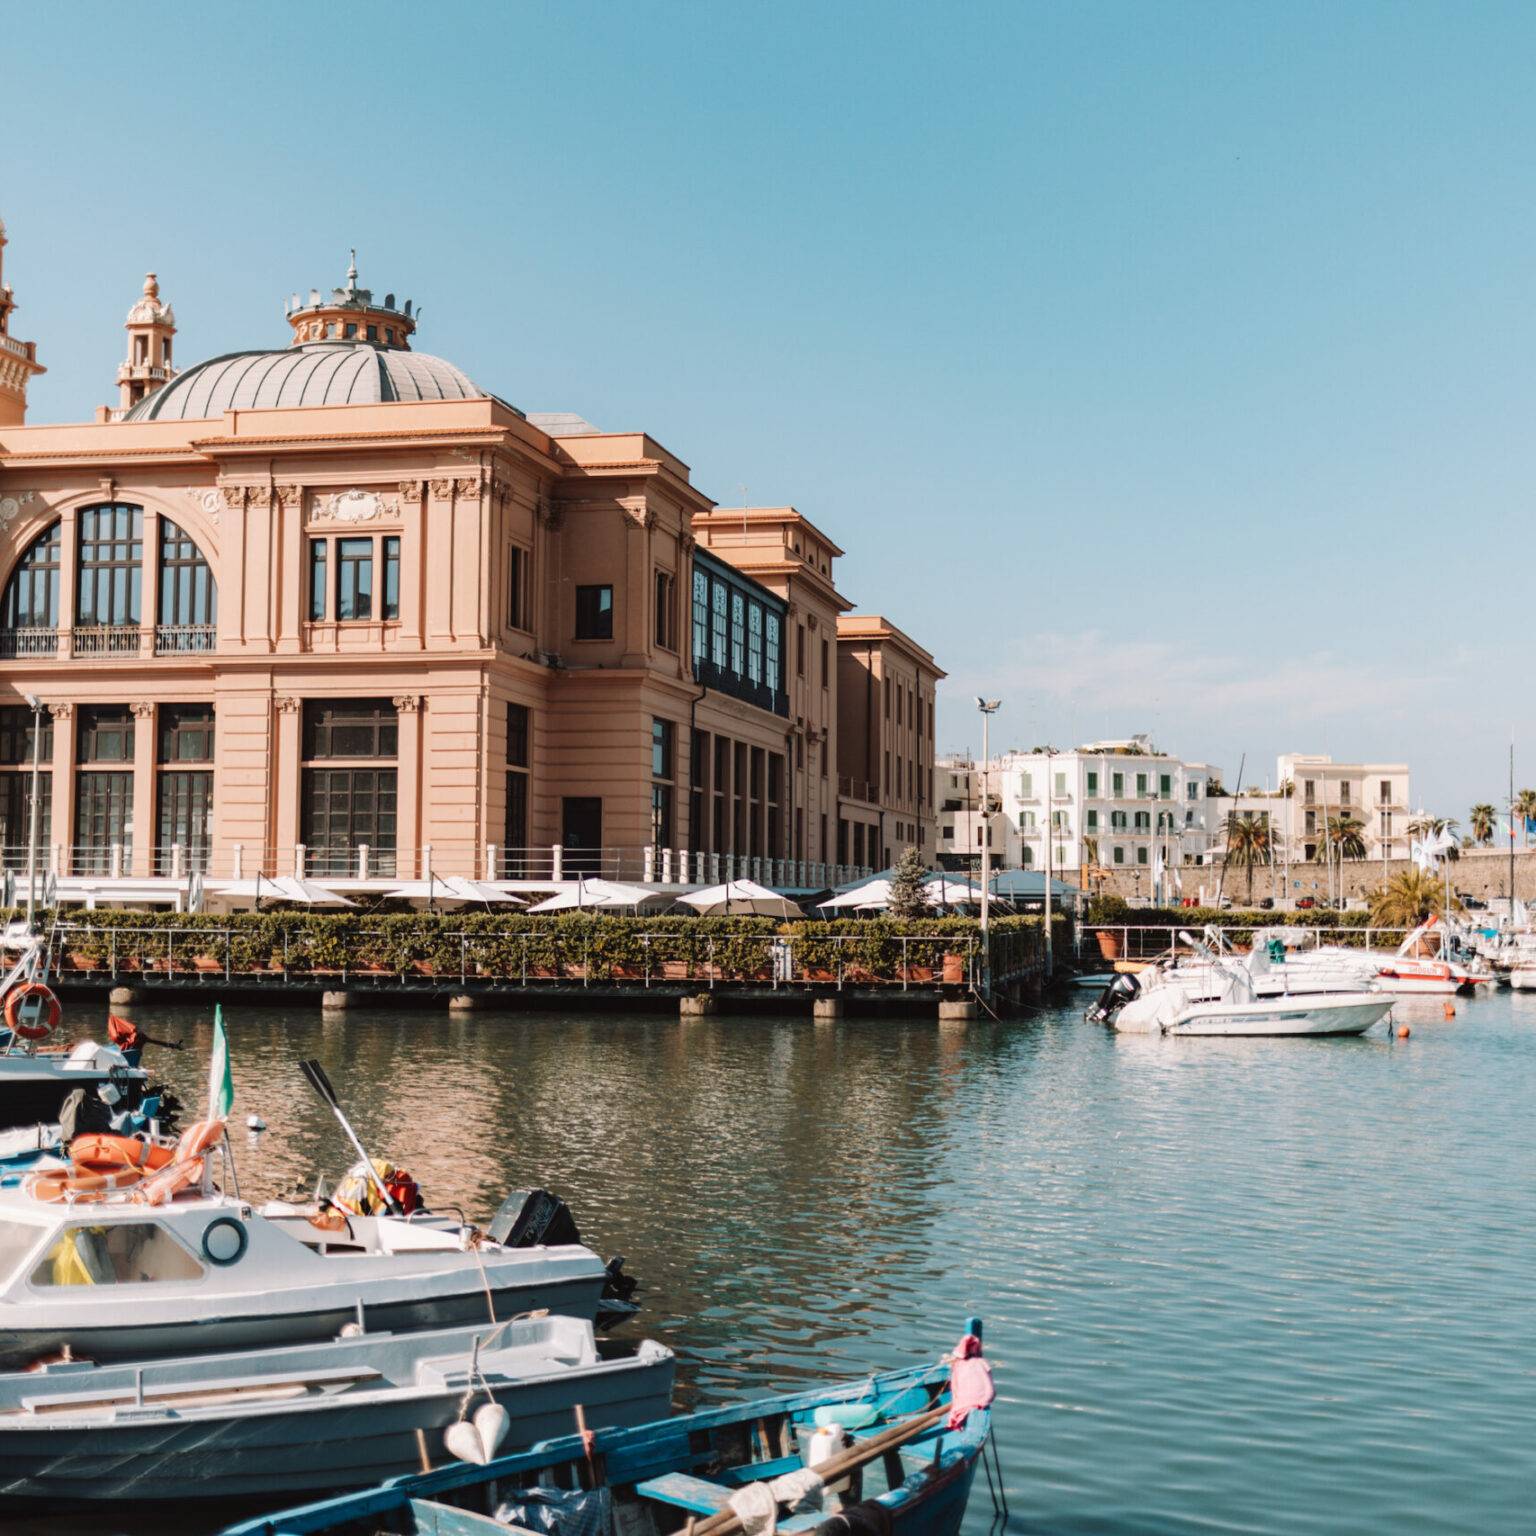 Blick auf den Hafen mit vielen Booten und im Hintergrund das ehemalige Theater von Bari.